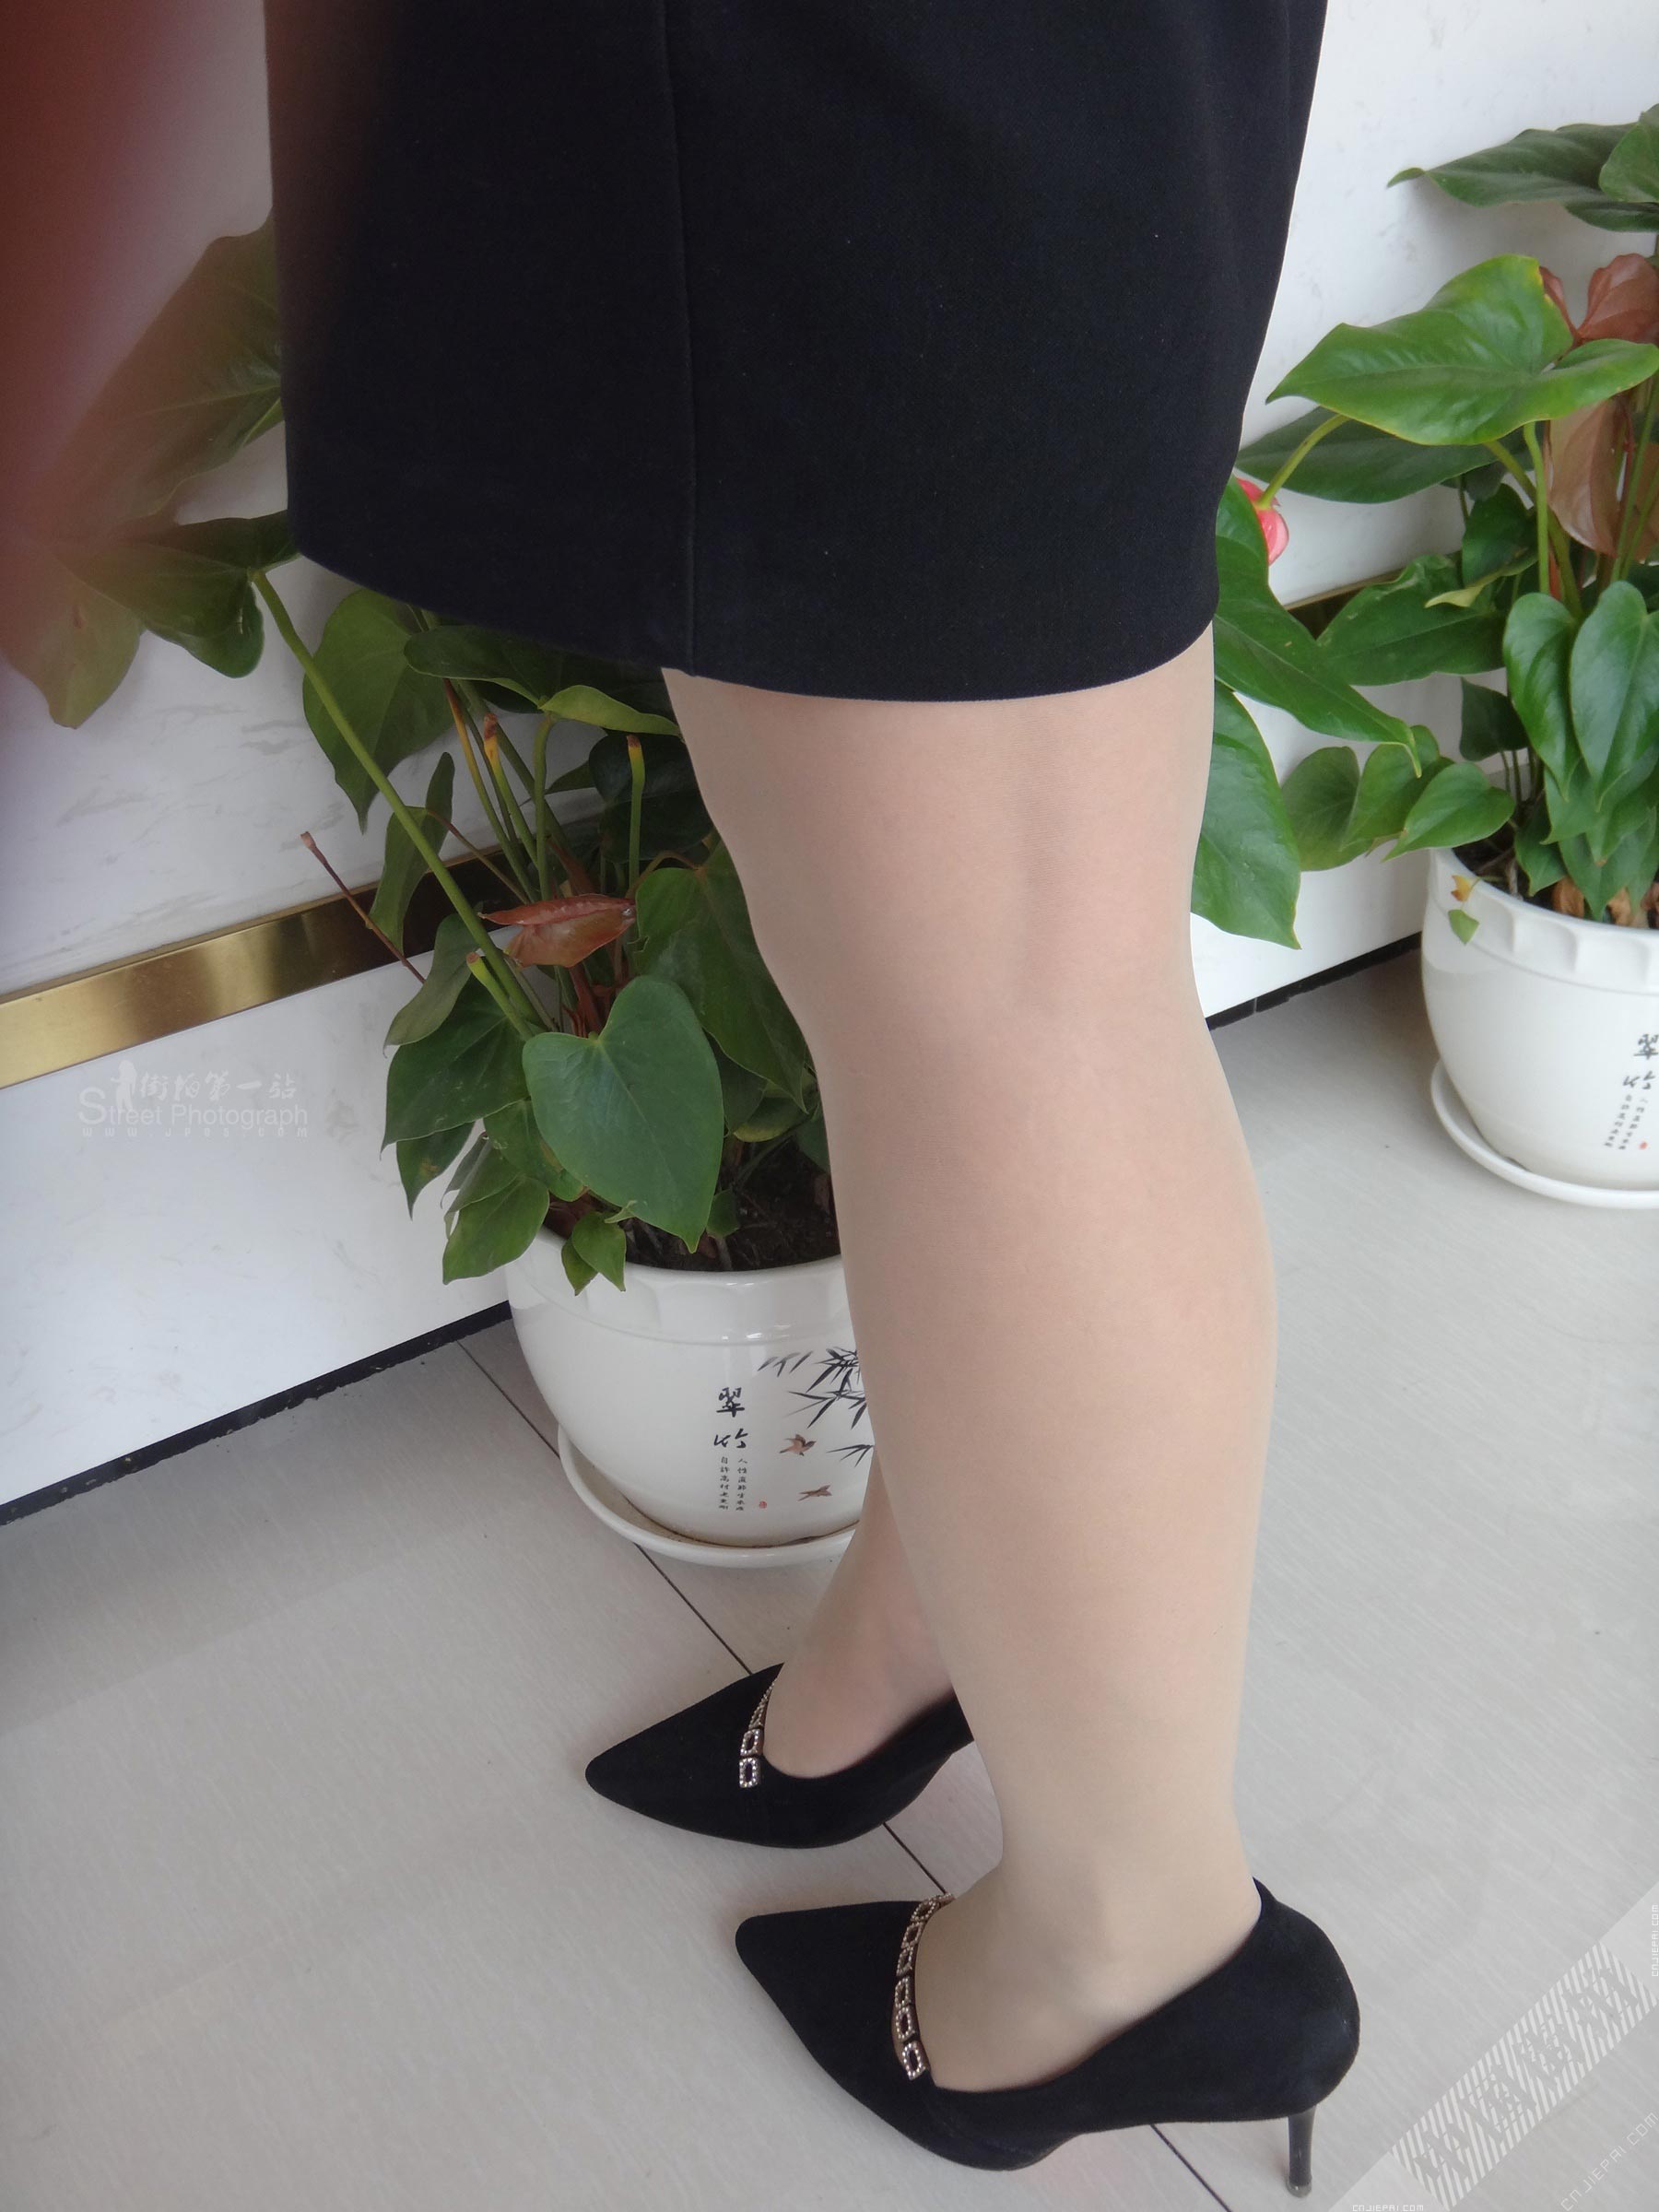 短裙制服美女业务的黑丝高跟美腿 图2